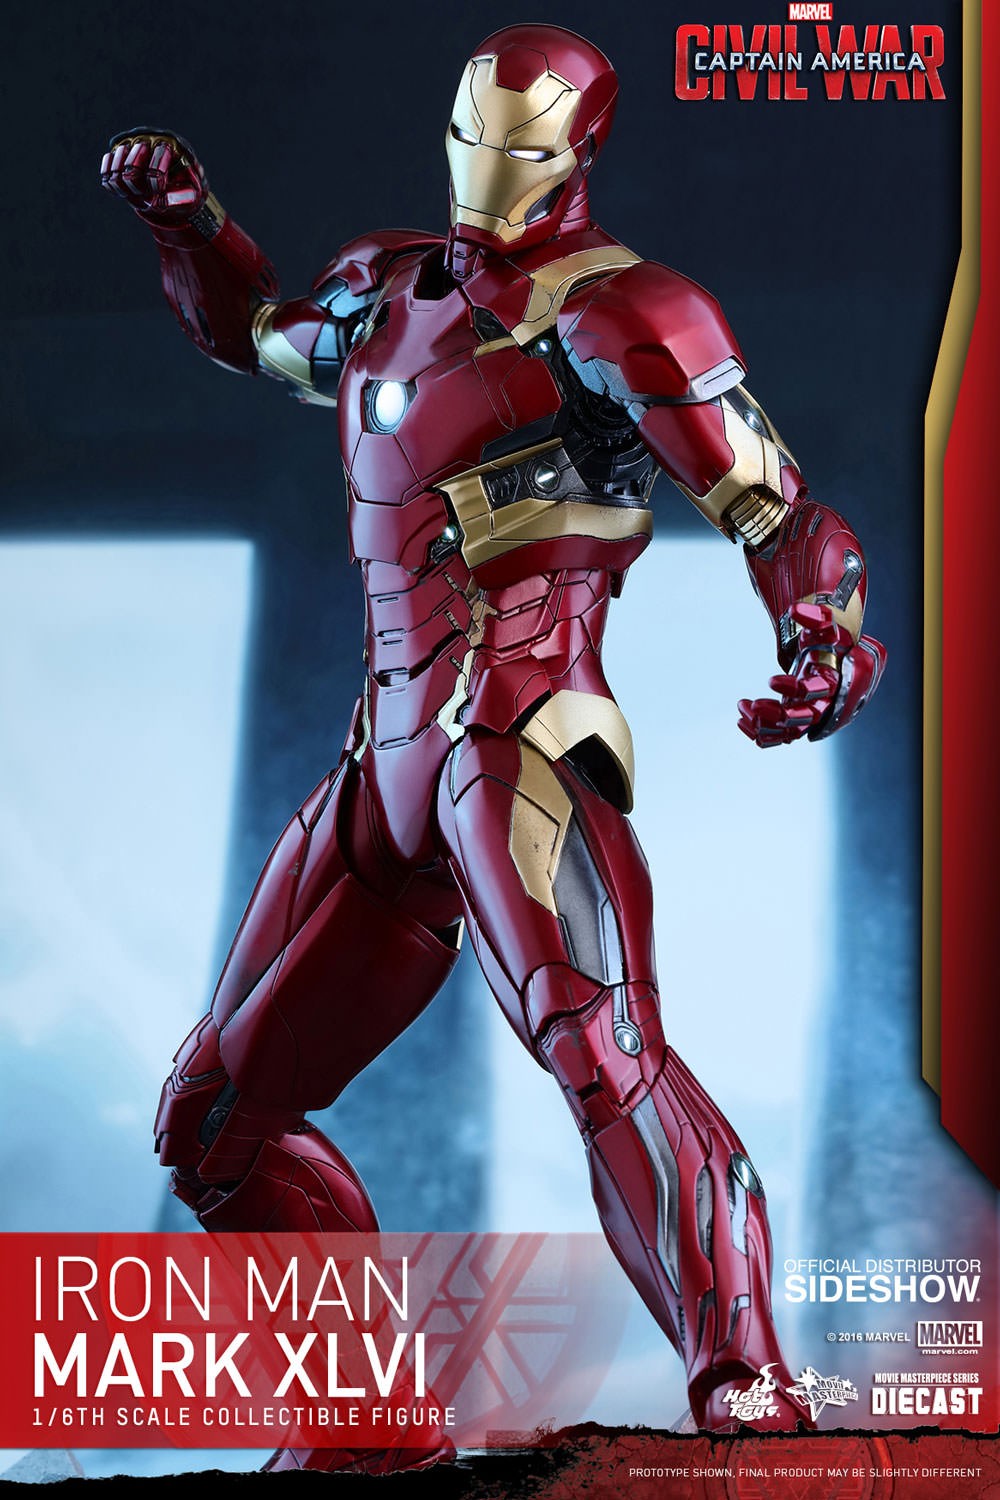 Iron Man Mark XLVI (Prototype Shown) View 8